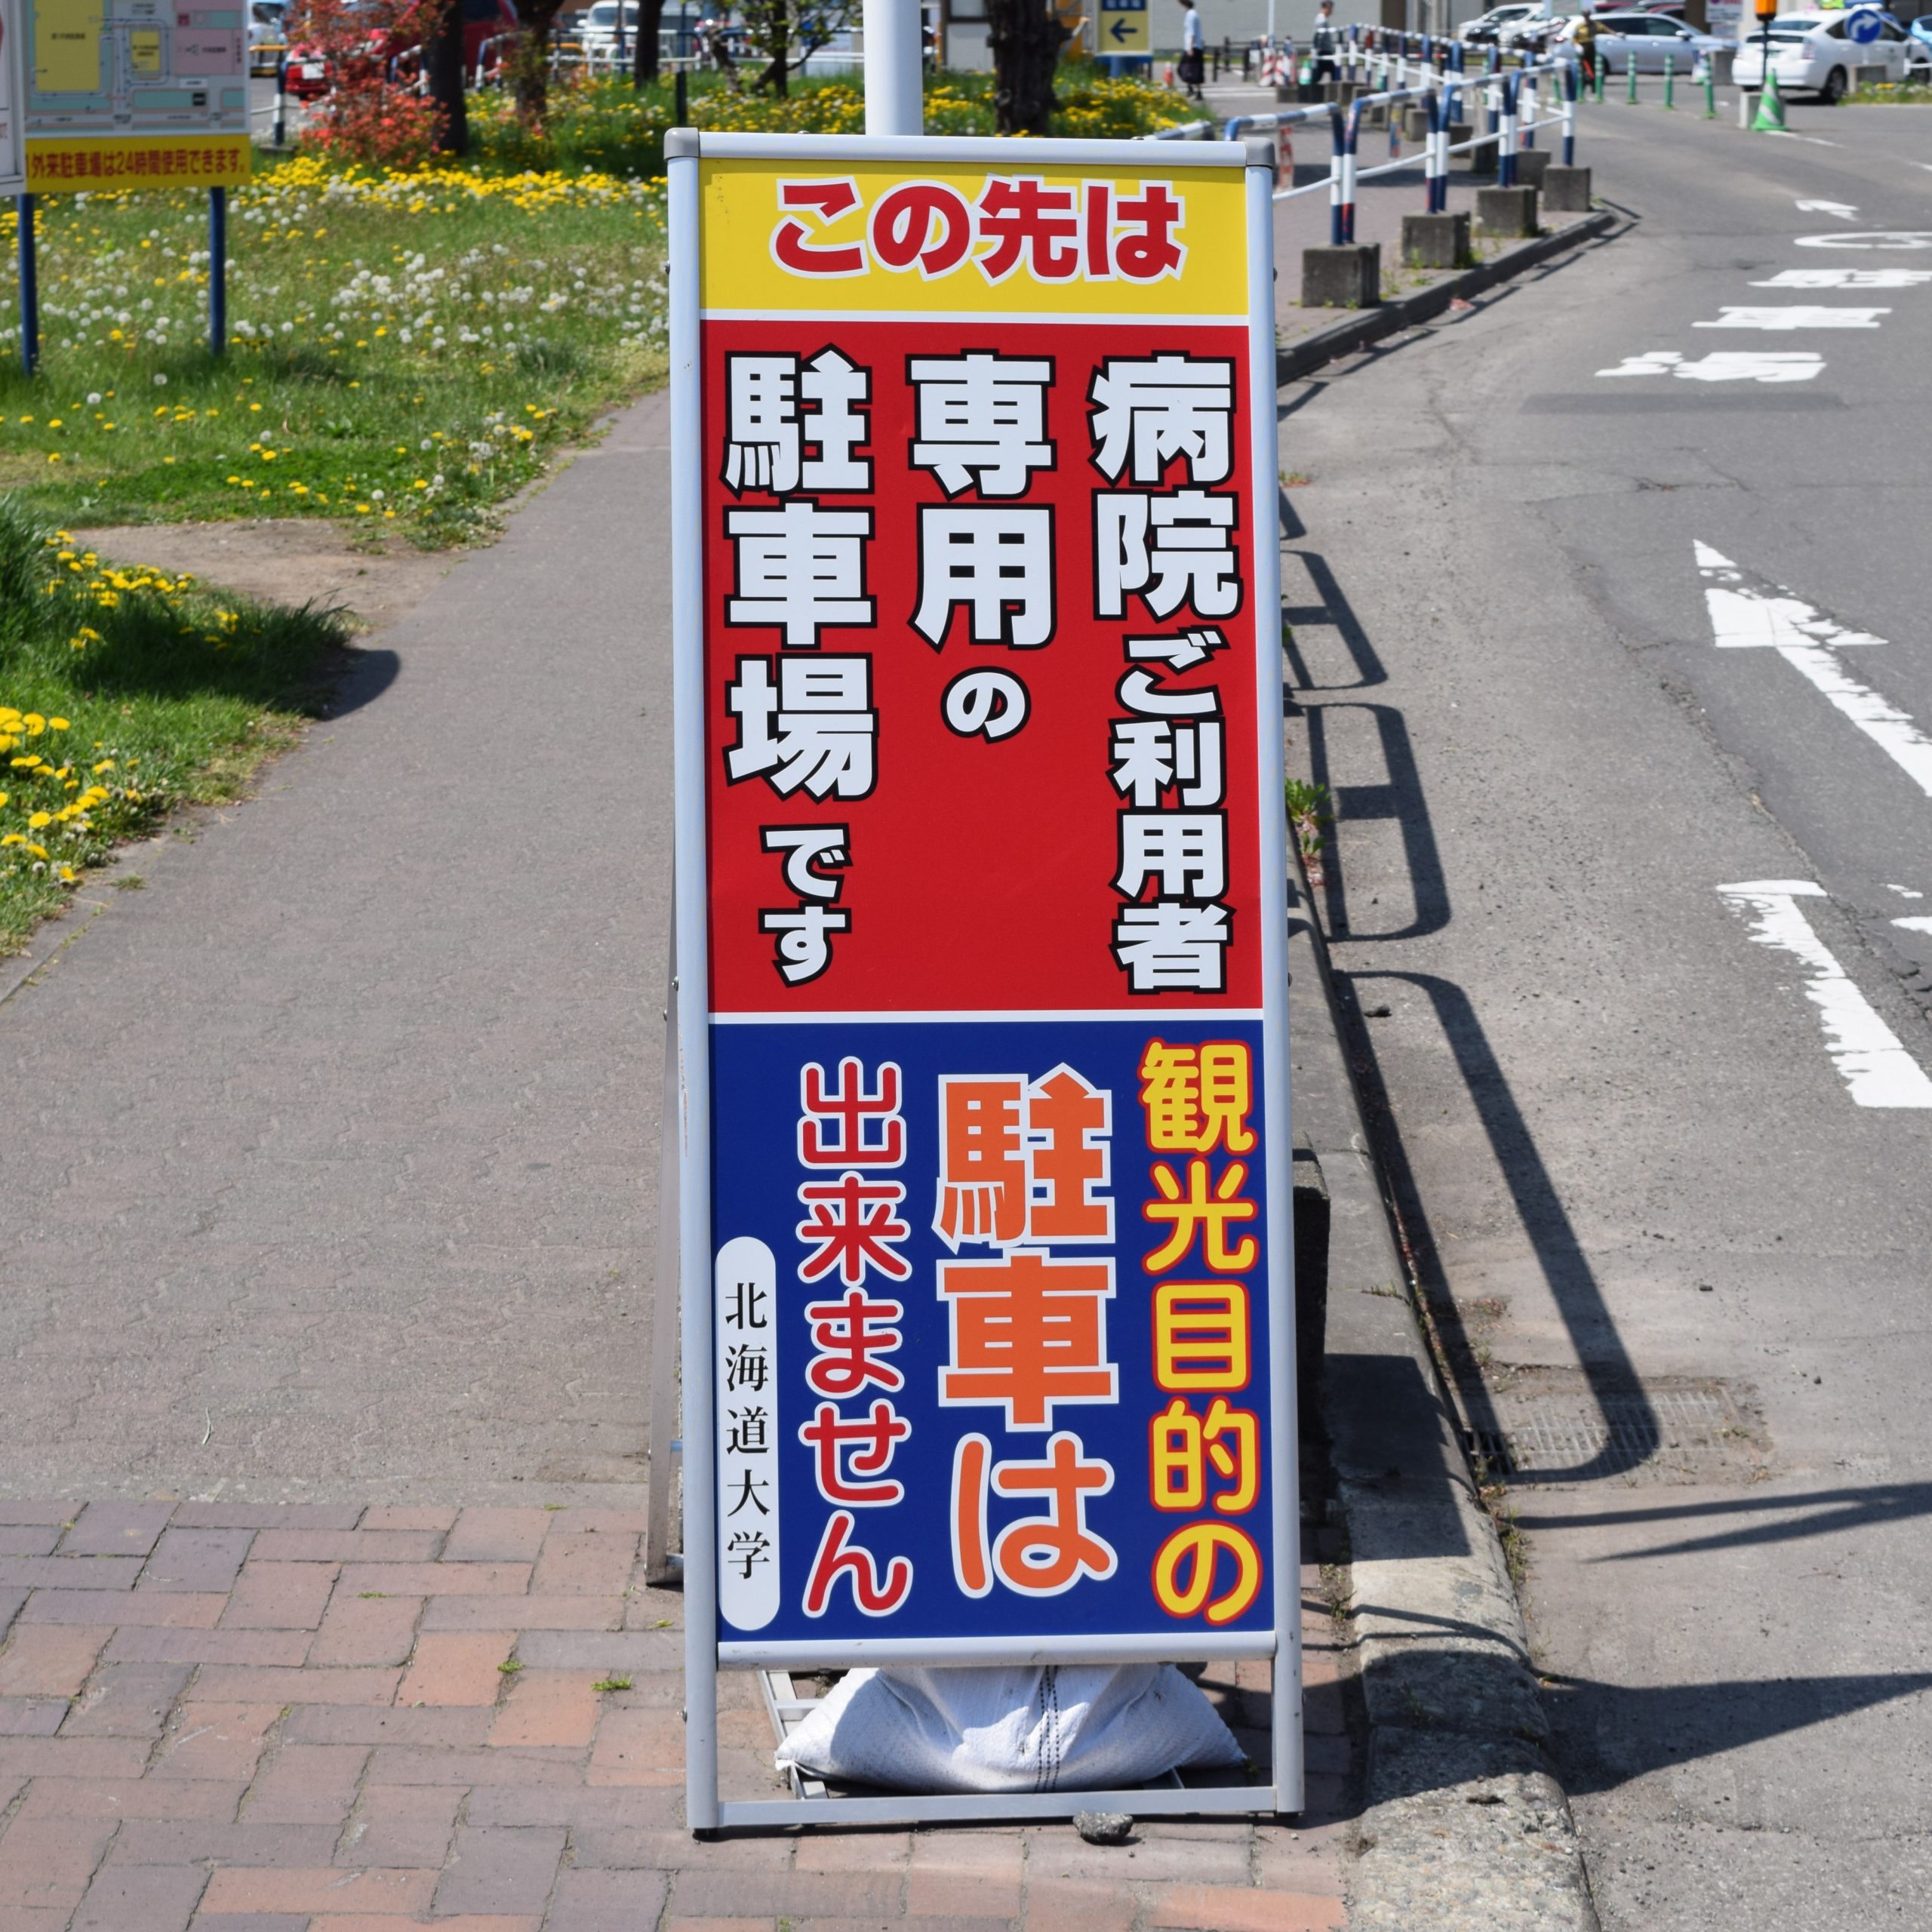 北海道大学のコインパーキング・時間貸し駐車場一覧